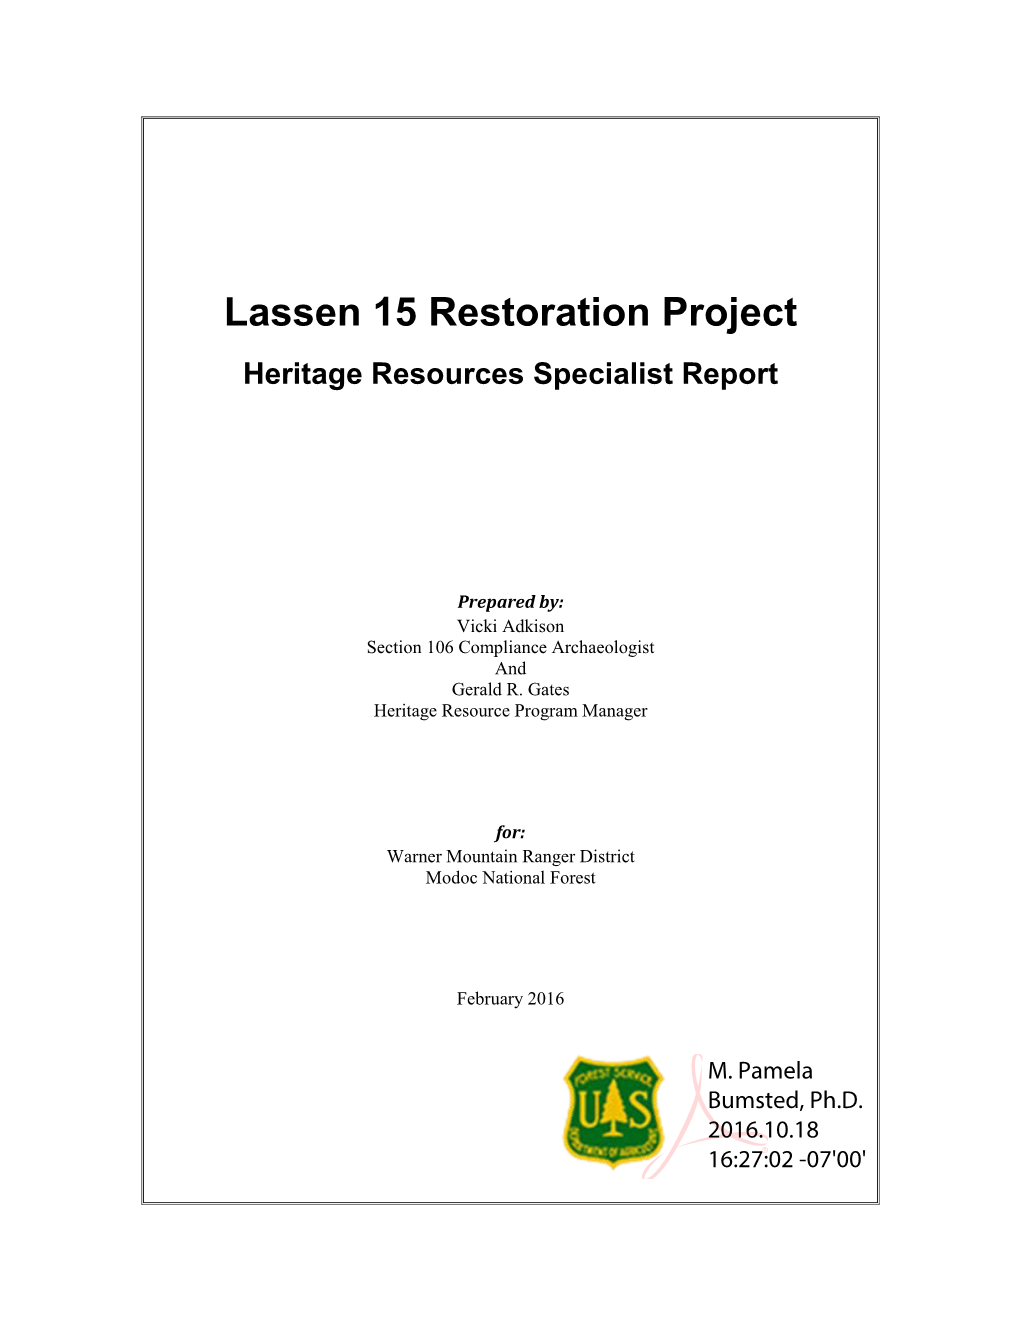 Lassen 15 Restoration Project Heritage Resources Specialist Report